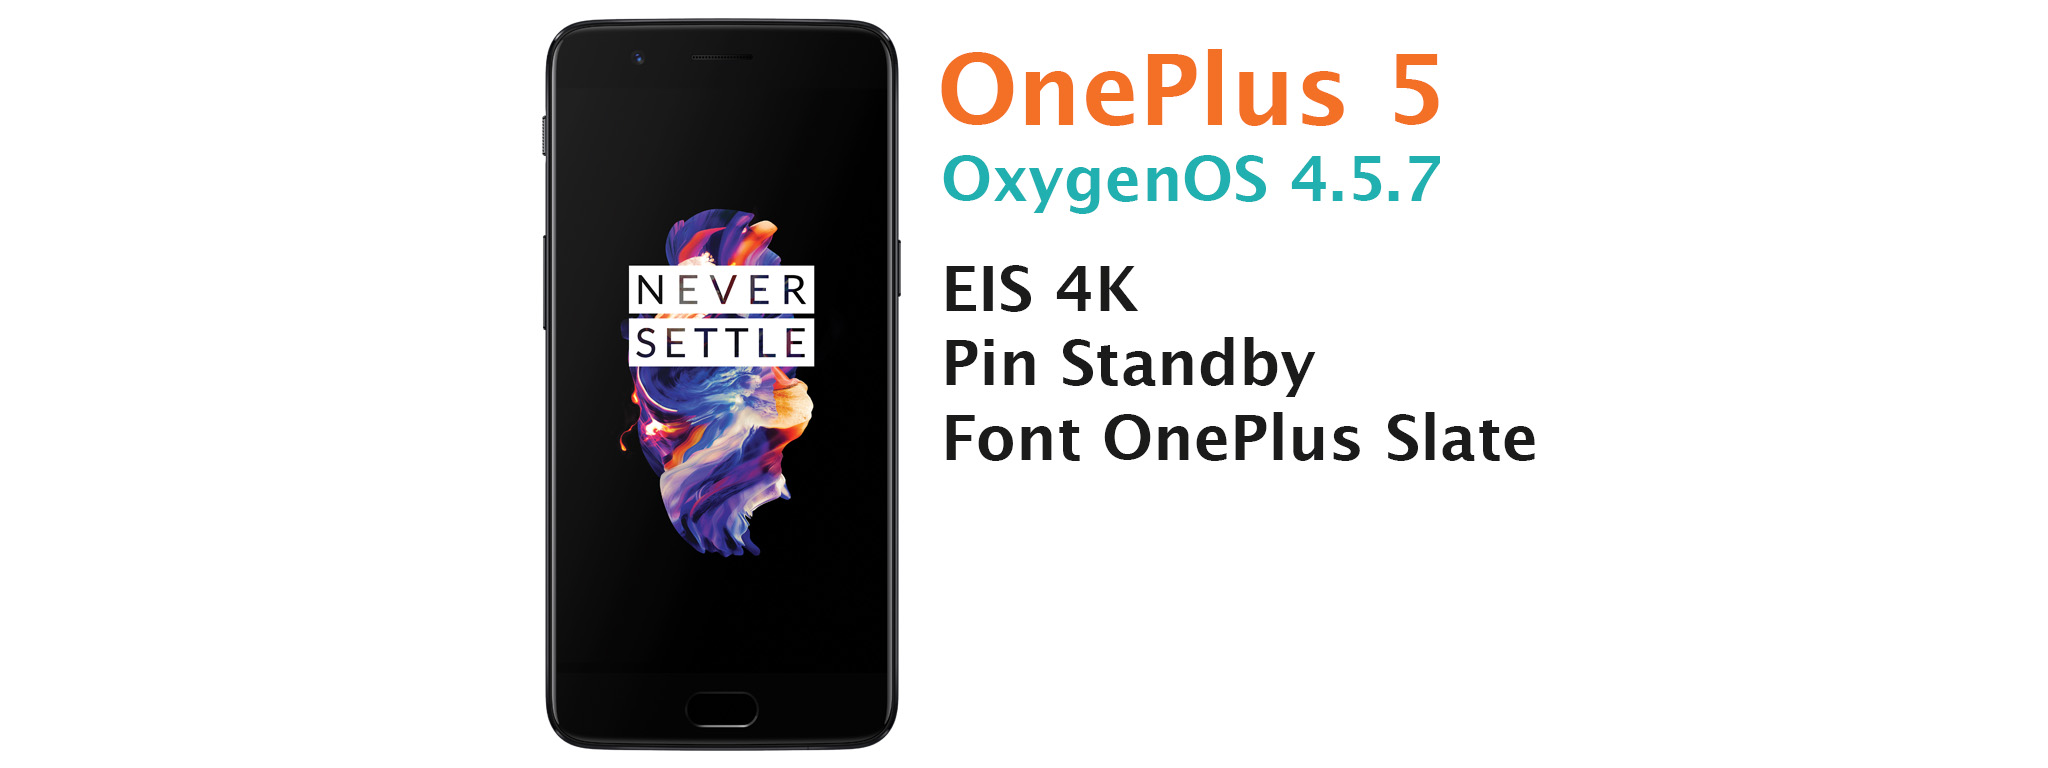 OnePlus 5 có cập nhật OxygenOS 4.5.7: Chống rung điện tử khi quay 4K, cải thiện pin Standby...